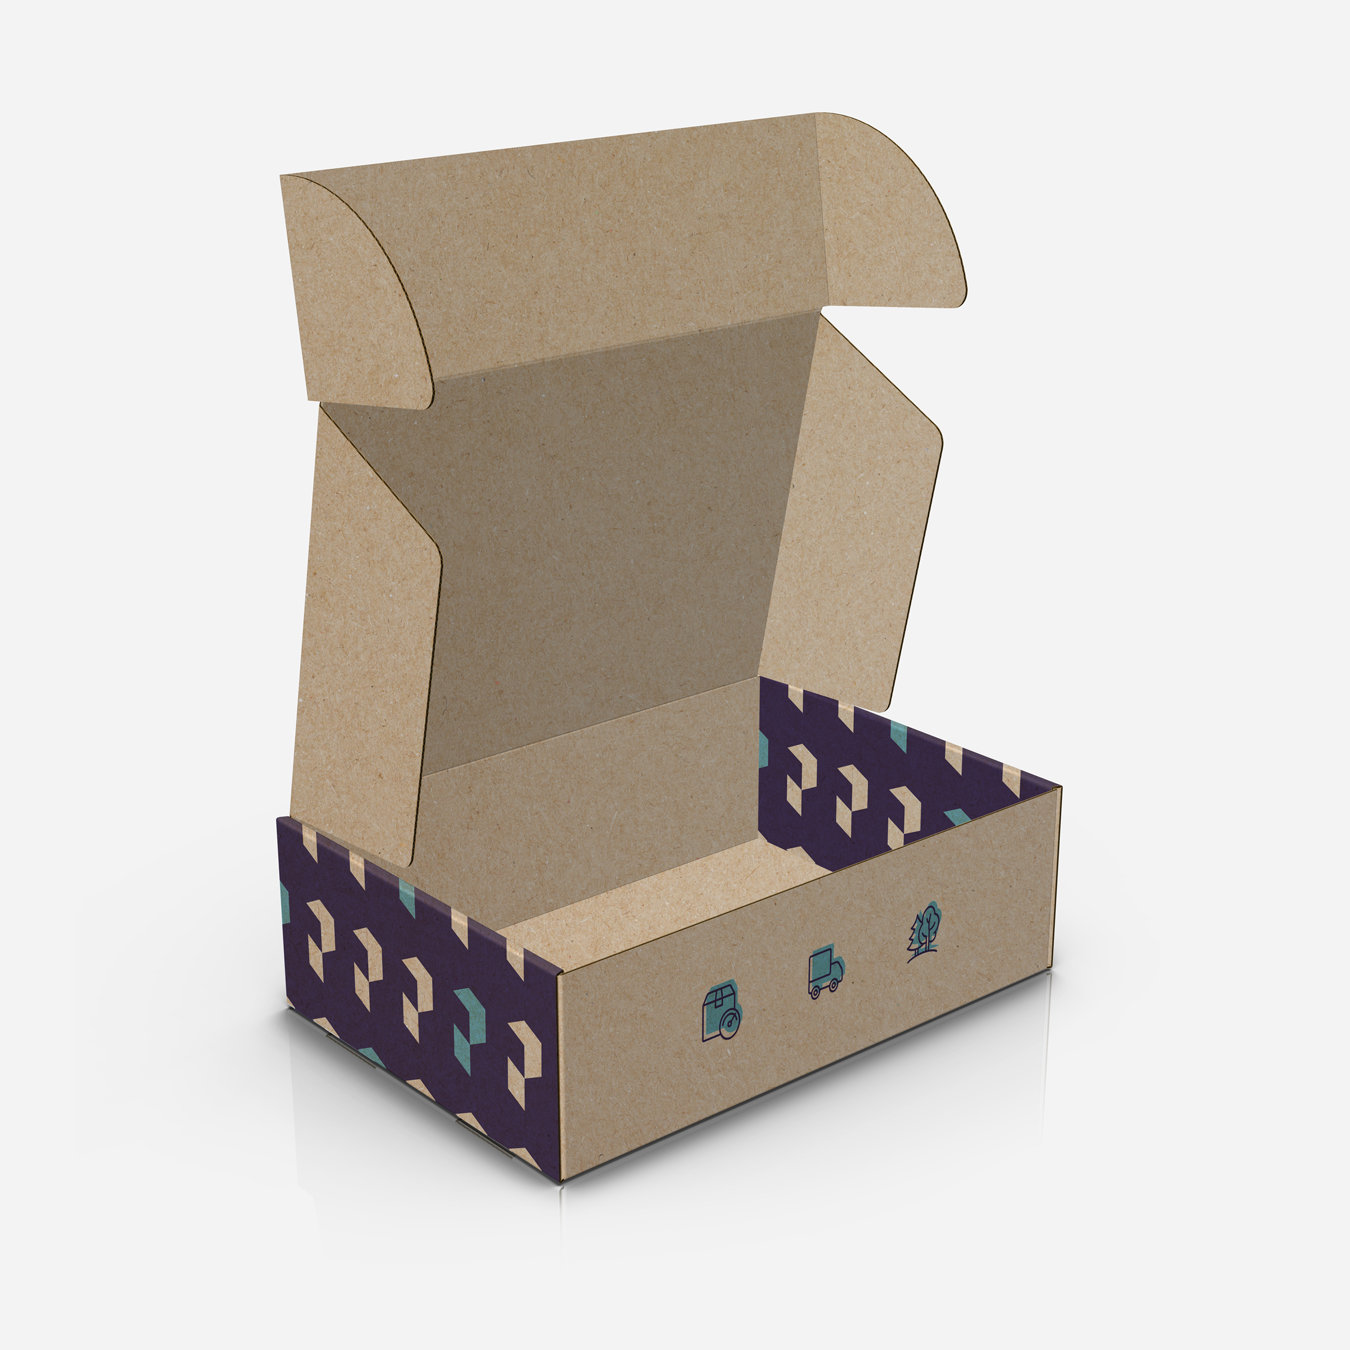 Pudełko wysyłkowe z nadrukiem kolorowym – kartony fasonowe z logo.